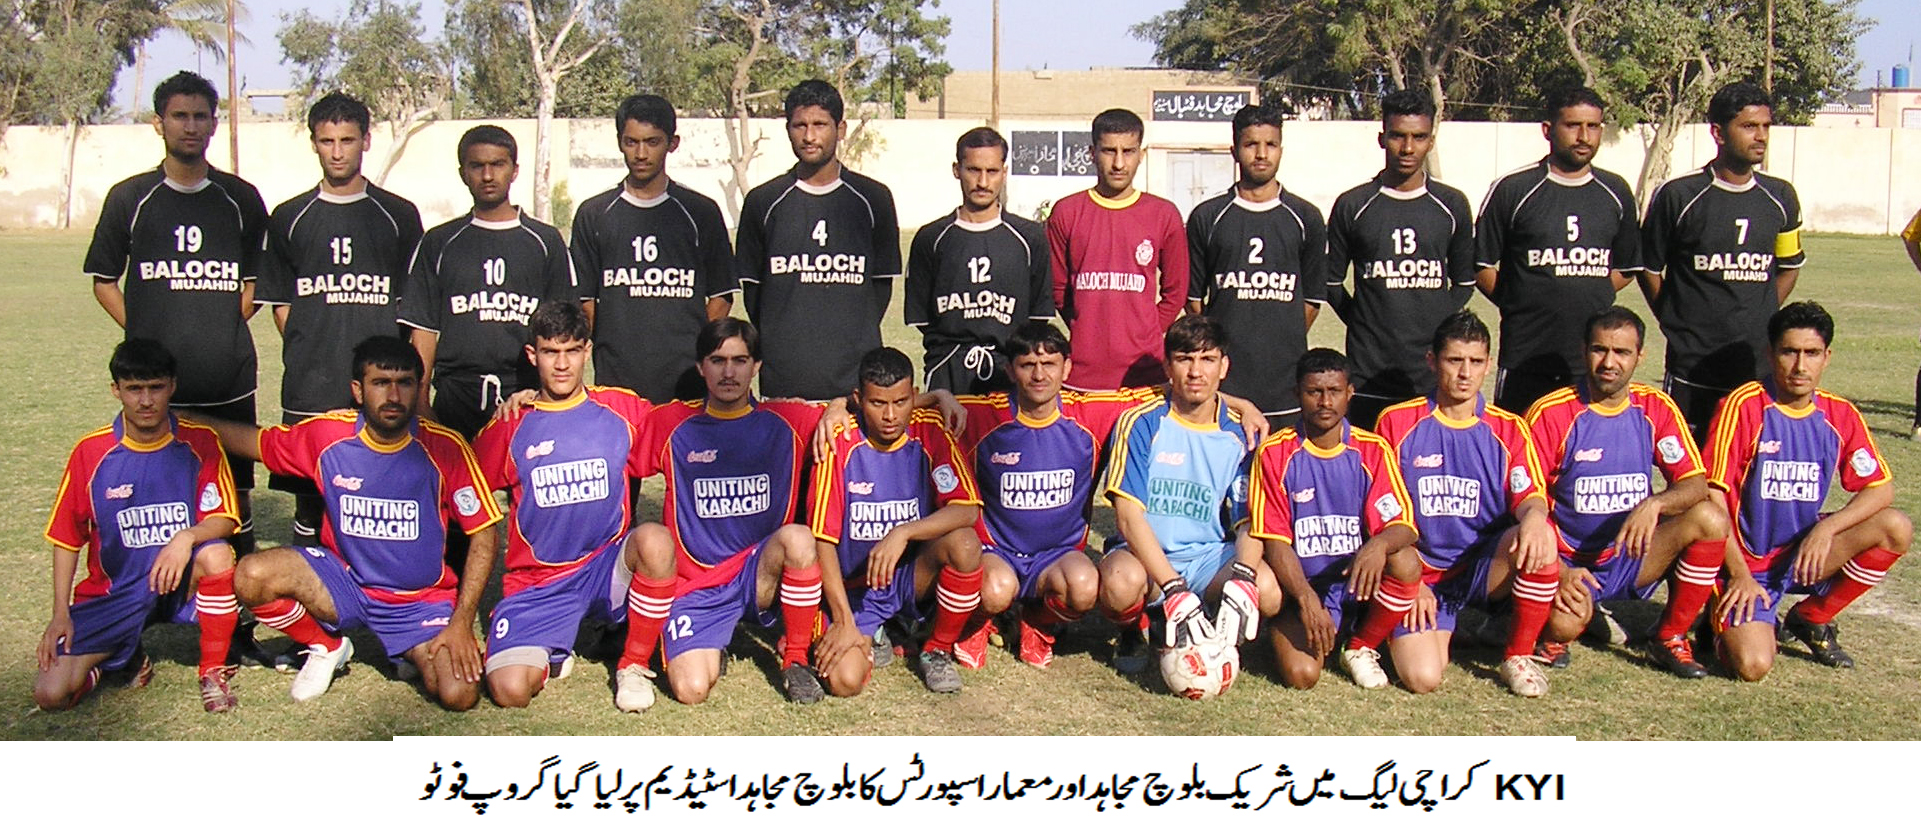 Karachi Football League Update 02.03.2014